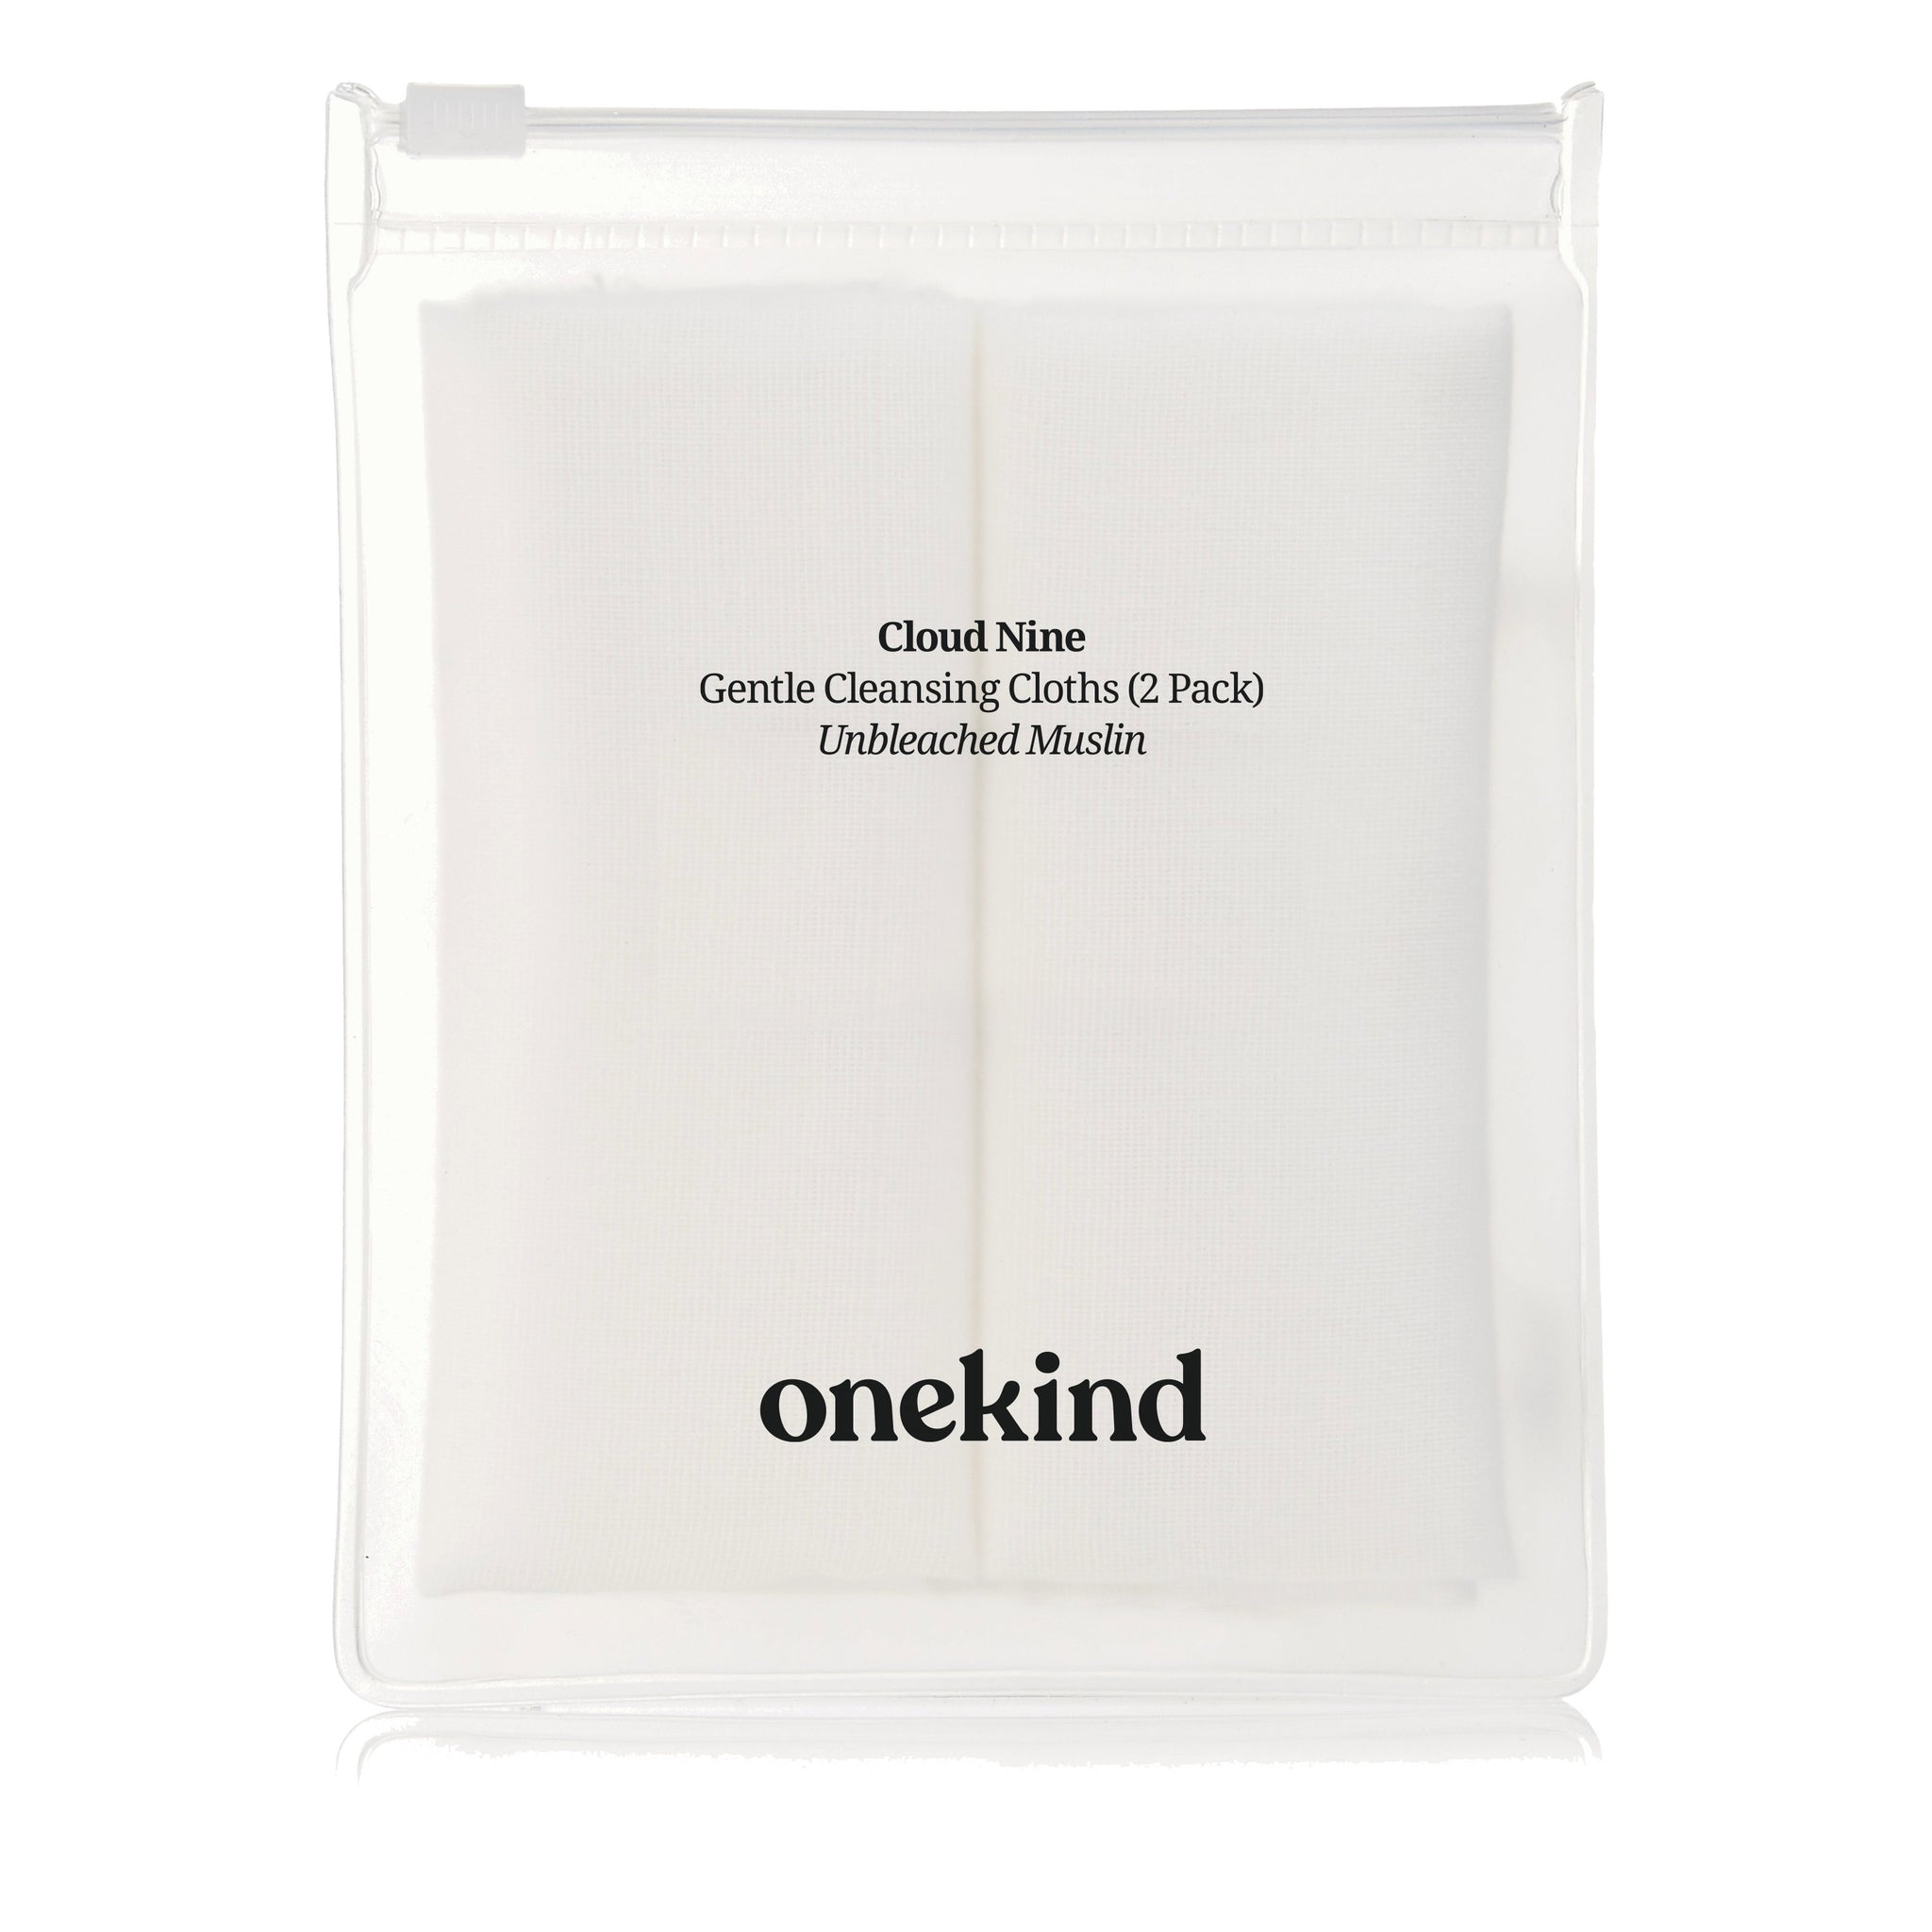 Onekind Cloud Nine Gentle Cleansing Cloths